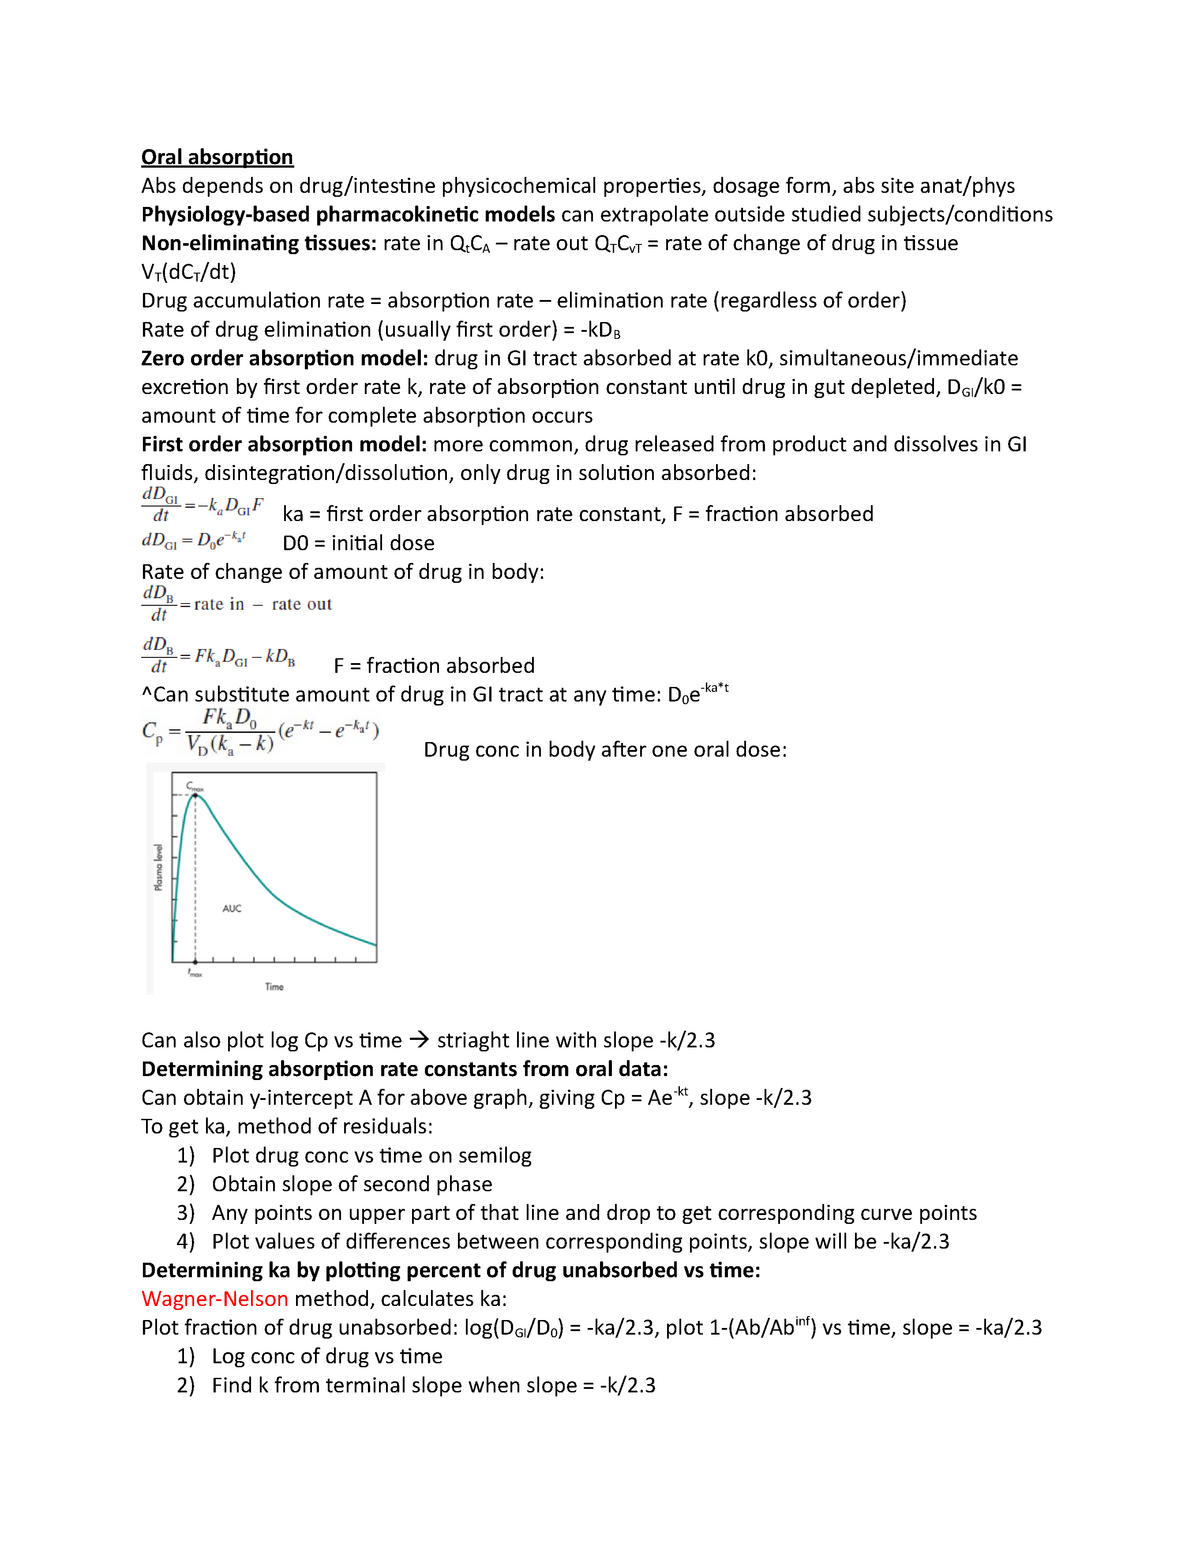 Kinetics EXAM 3 TEXT Notes - PSB 430 - MCPHS University - StuDocu